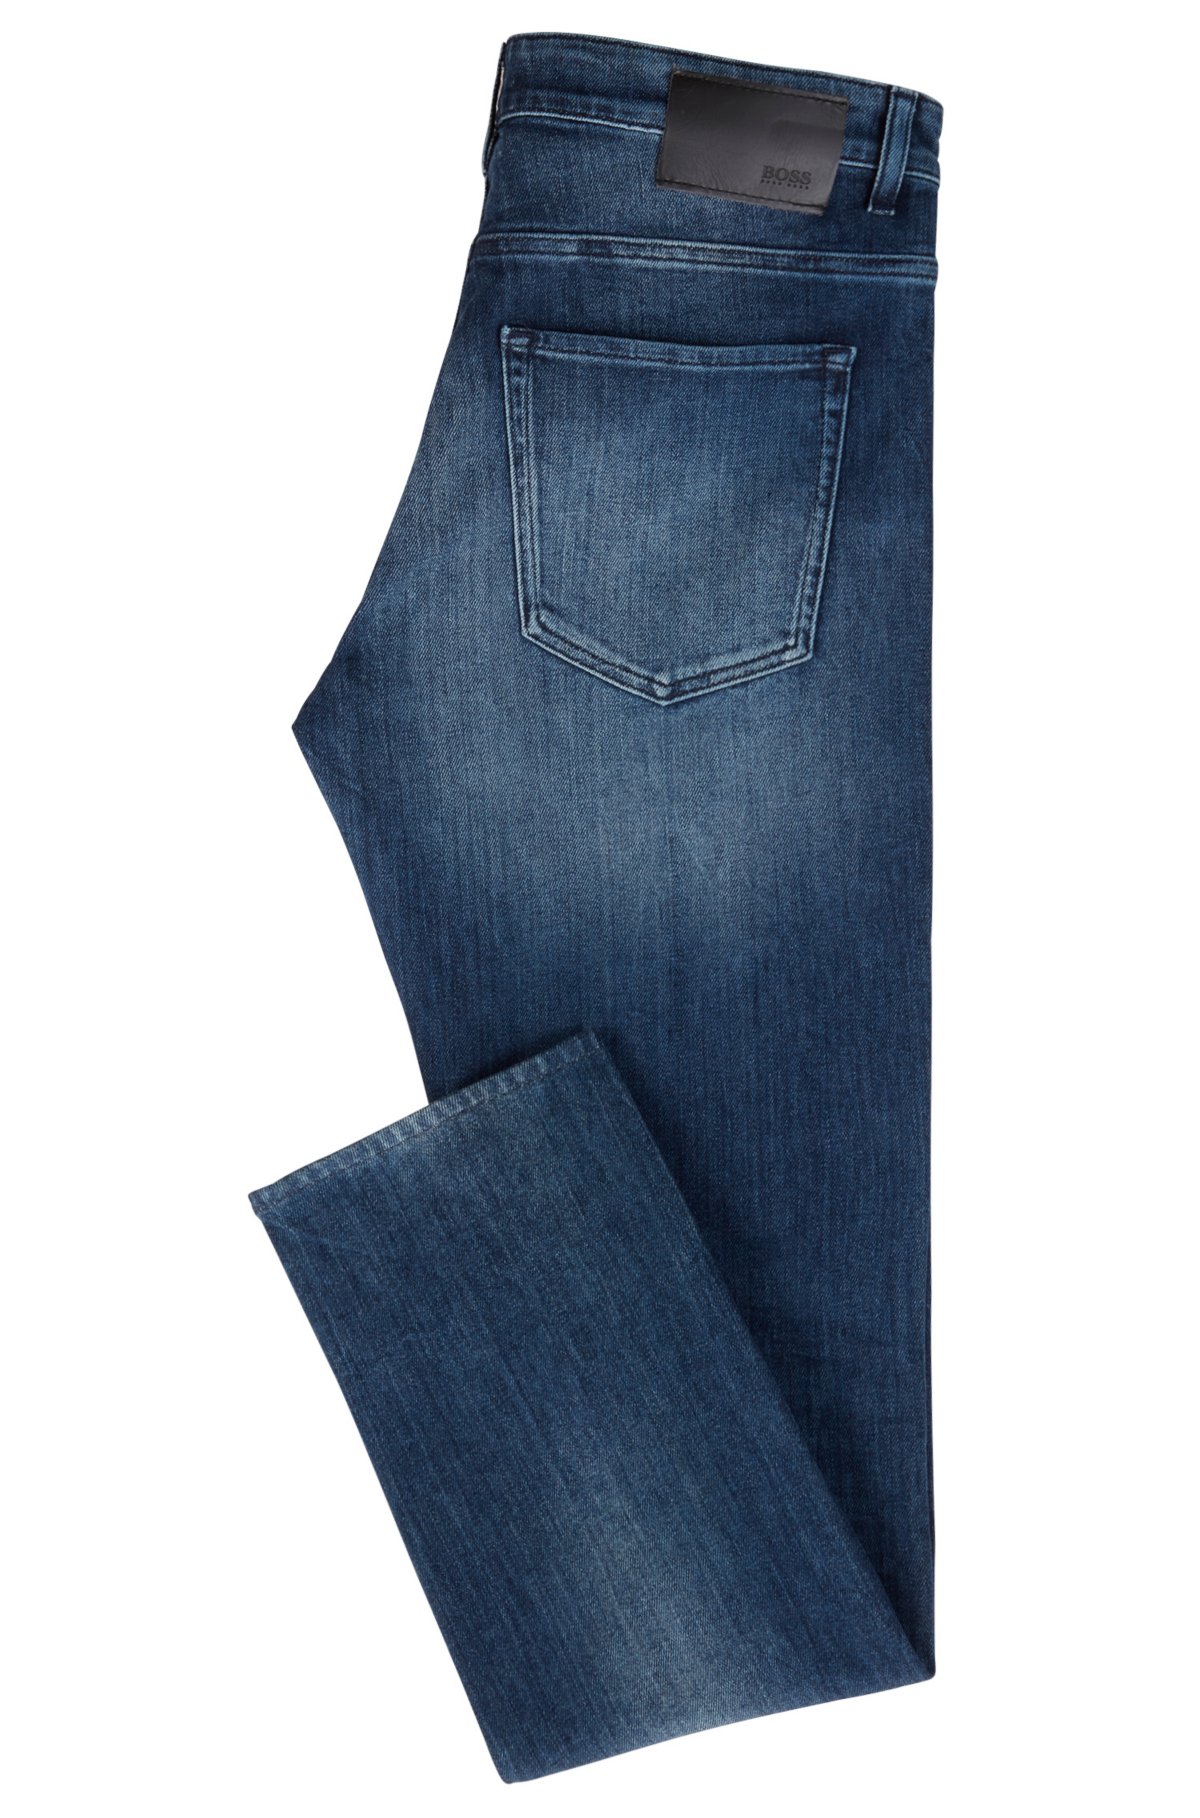 BOSS - Slim-fit jeans mid-wash denim